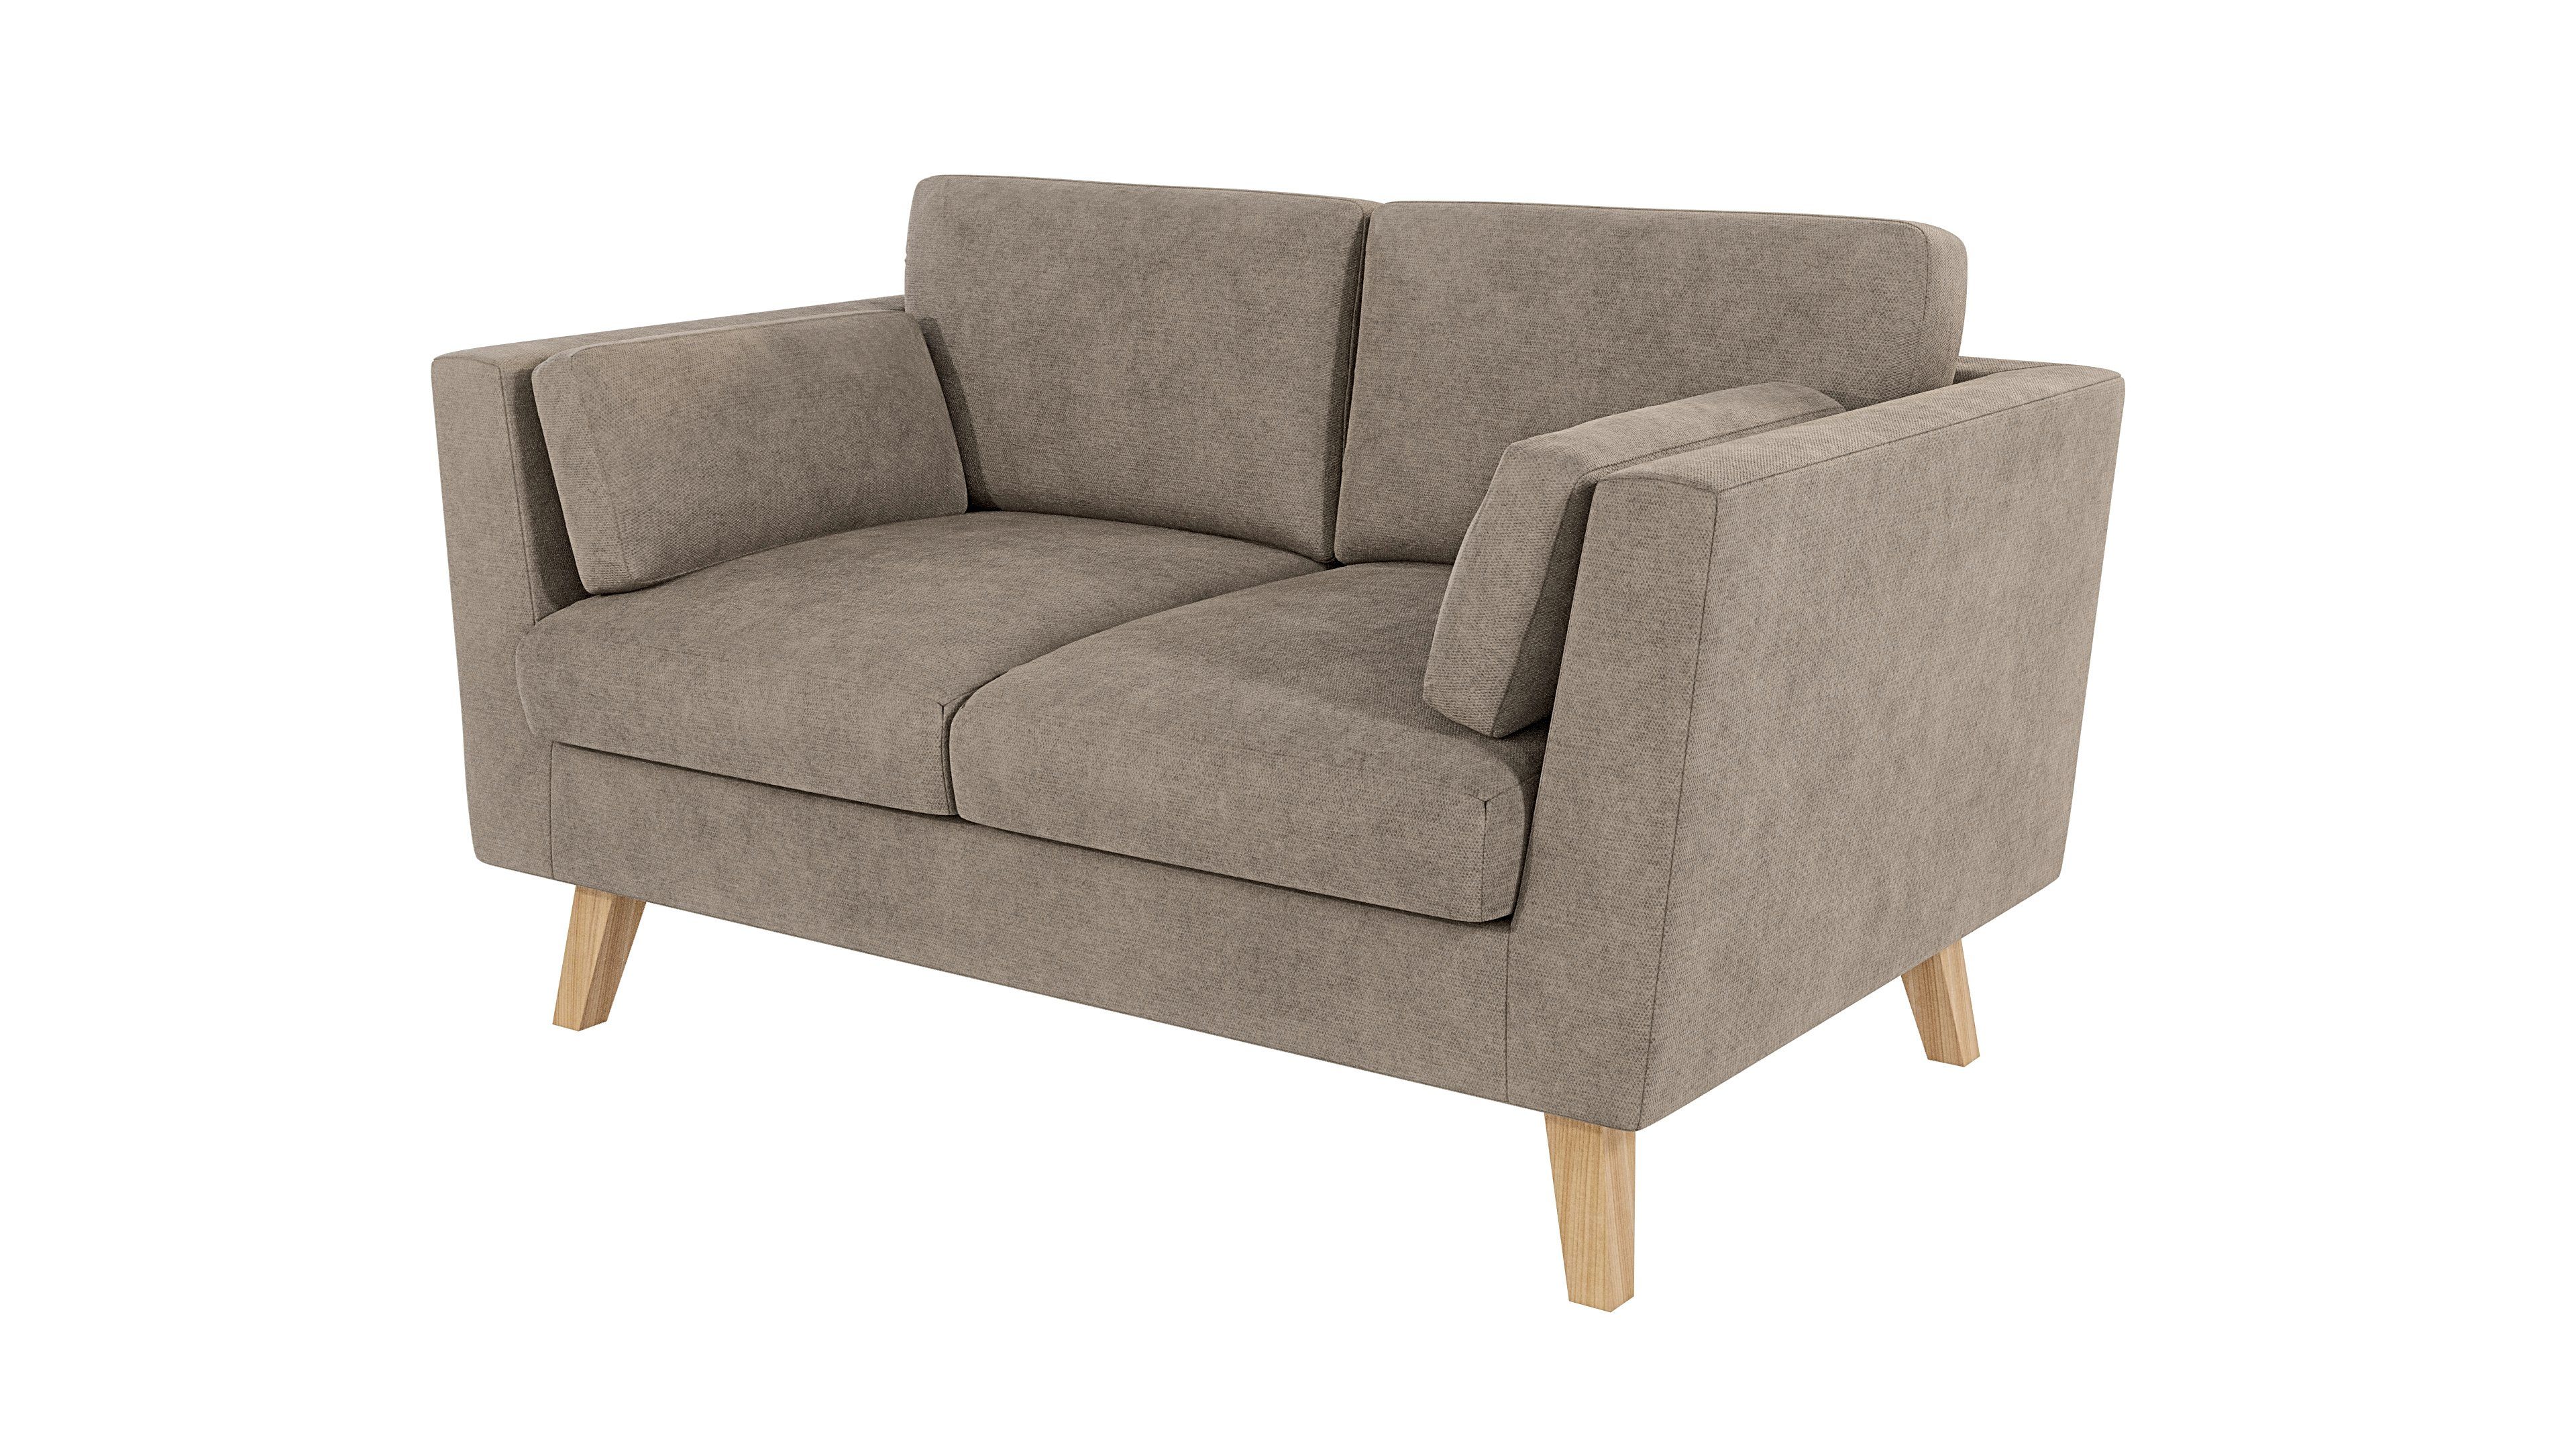 Wellenfederung mit Angeles Möbel 2-Sitzer Dunkelbeige im Sofa S-Style Design, skandinavischen